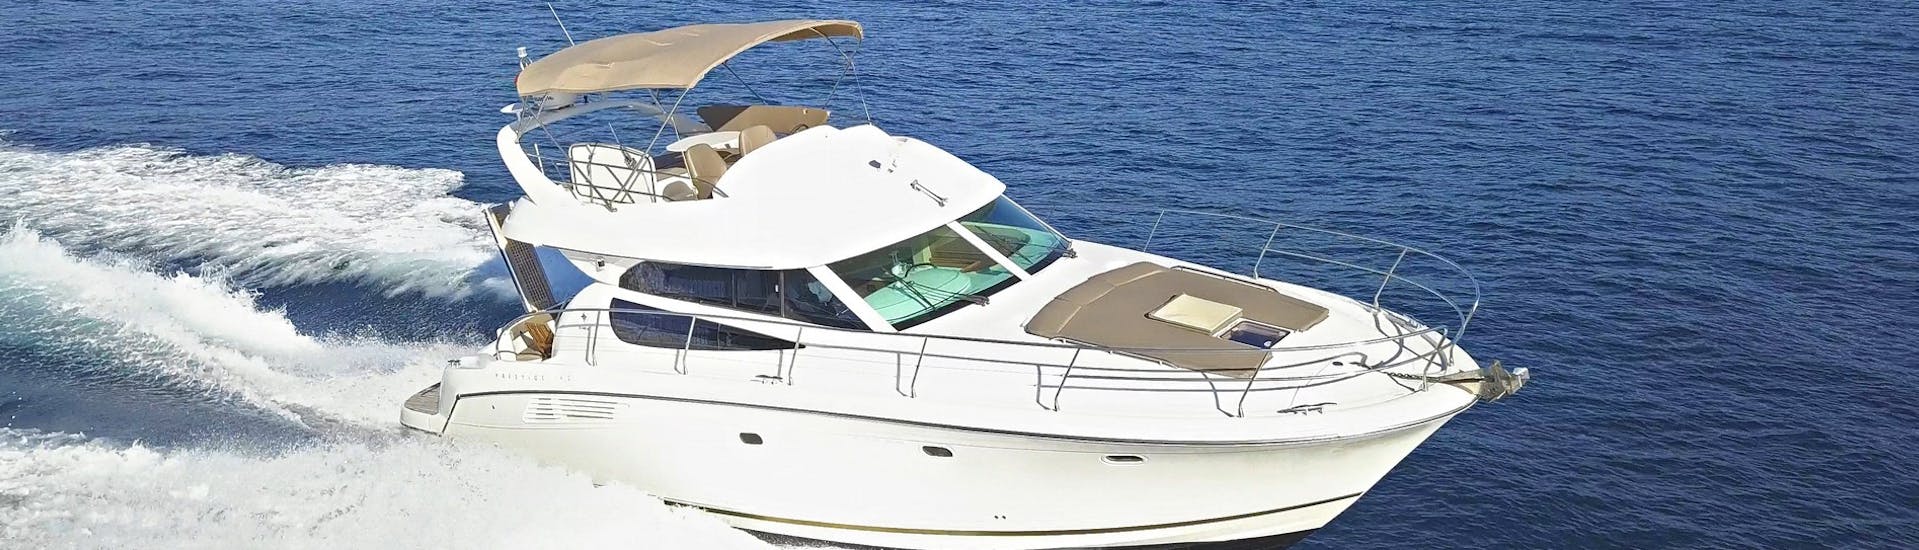 Gita privata di un'intera giornata su uno yacht di lusso alle isole Elafiti.